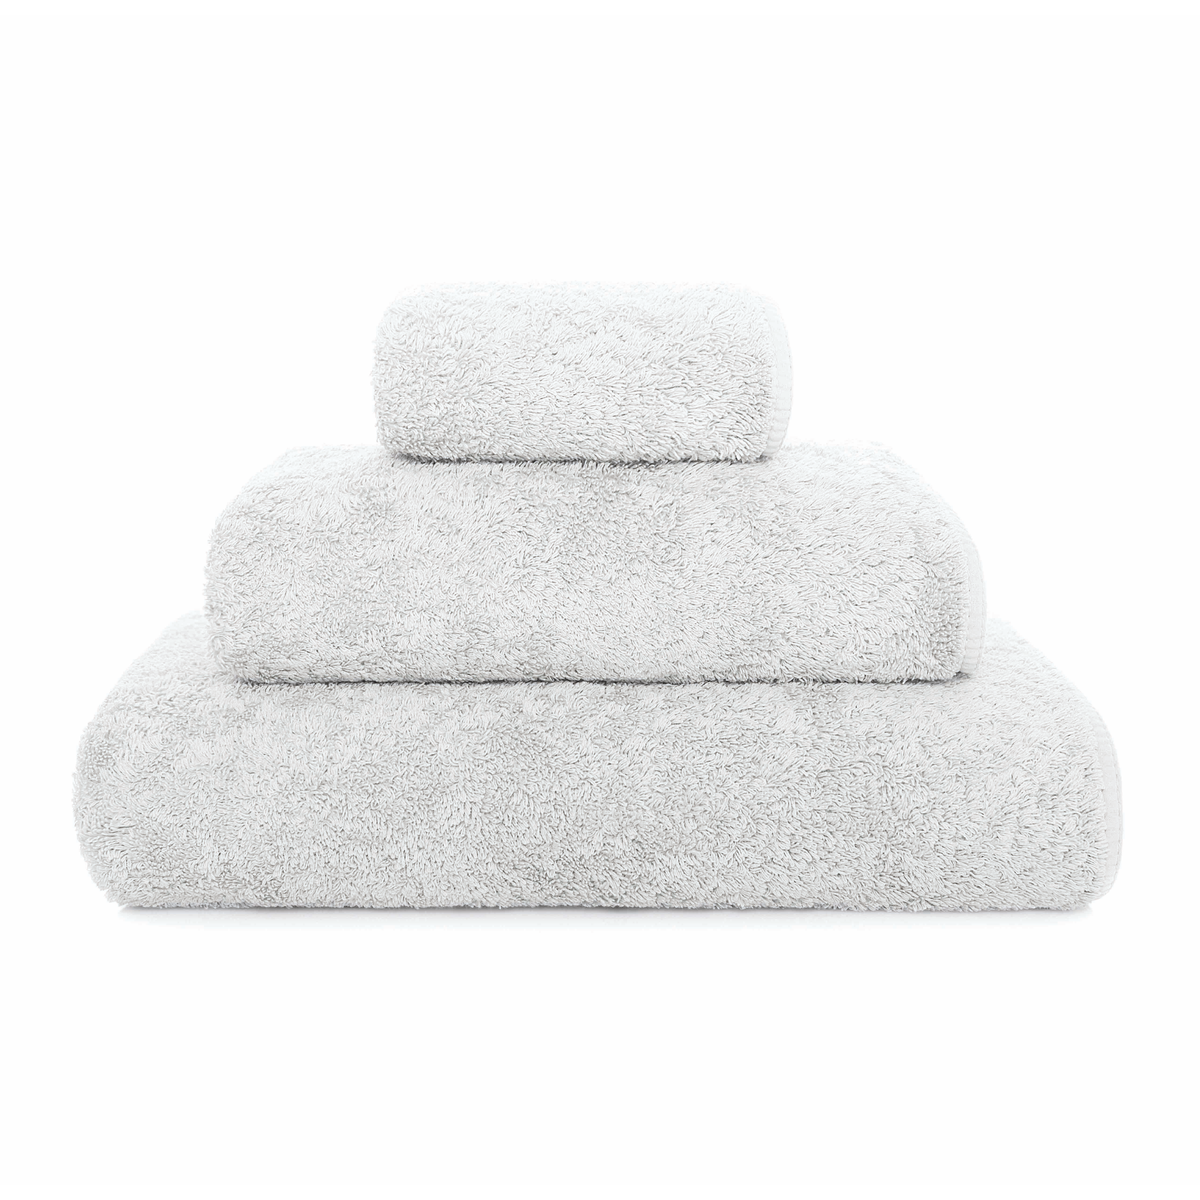 https://flandb.com/cdn/shop/products/Graccioza-Long-Double-Loop-Bath-Towels-Cloud_1200x.png?v=1680855150